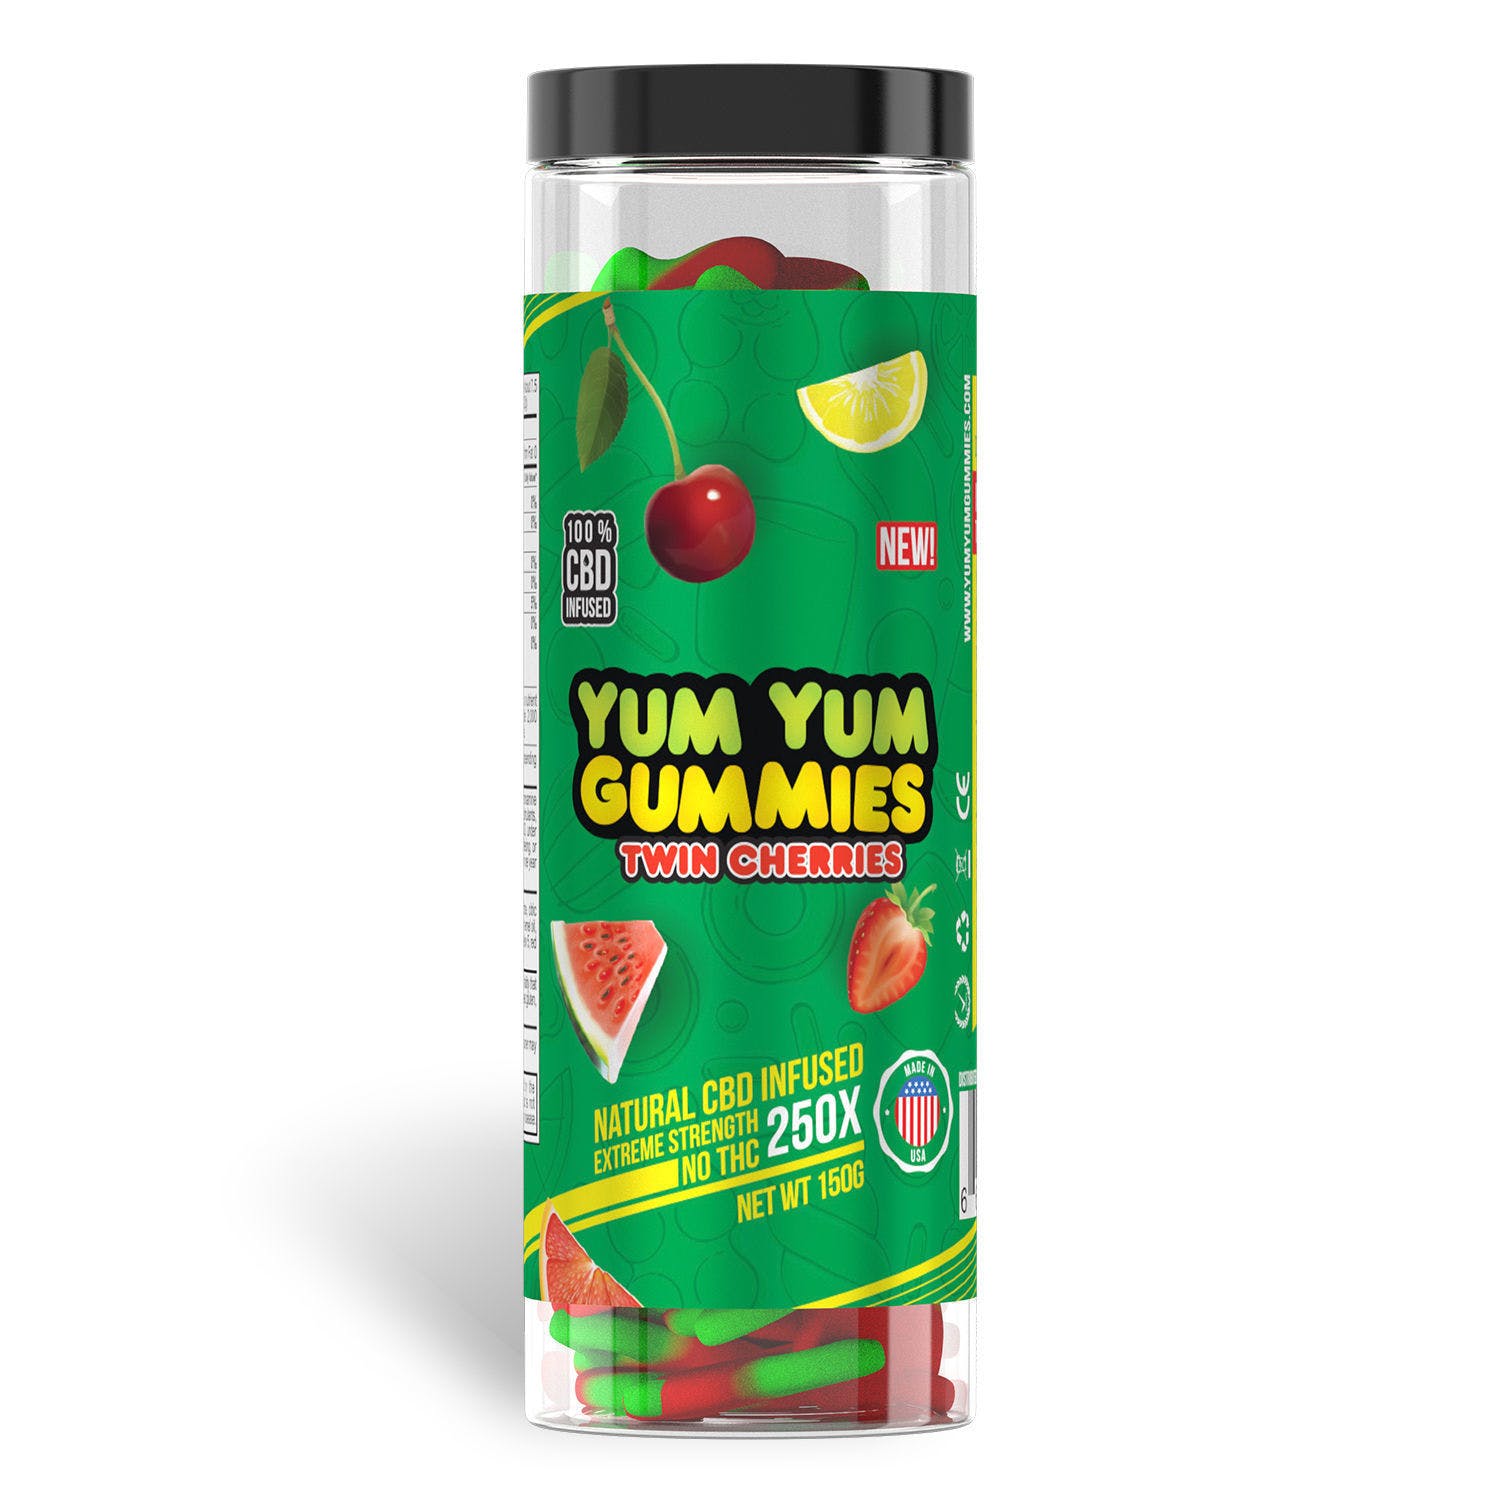 Yum Yum Gummies 250x - CBD Infused Twin Cherries